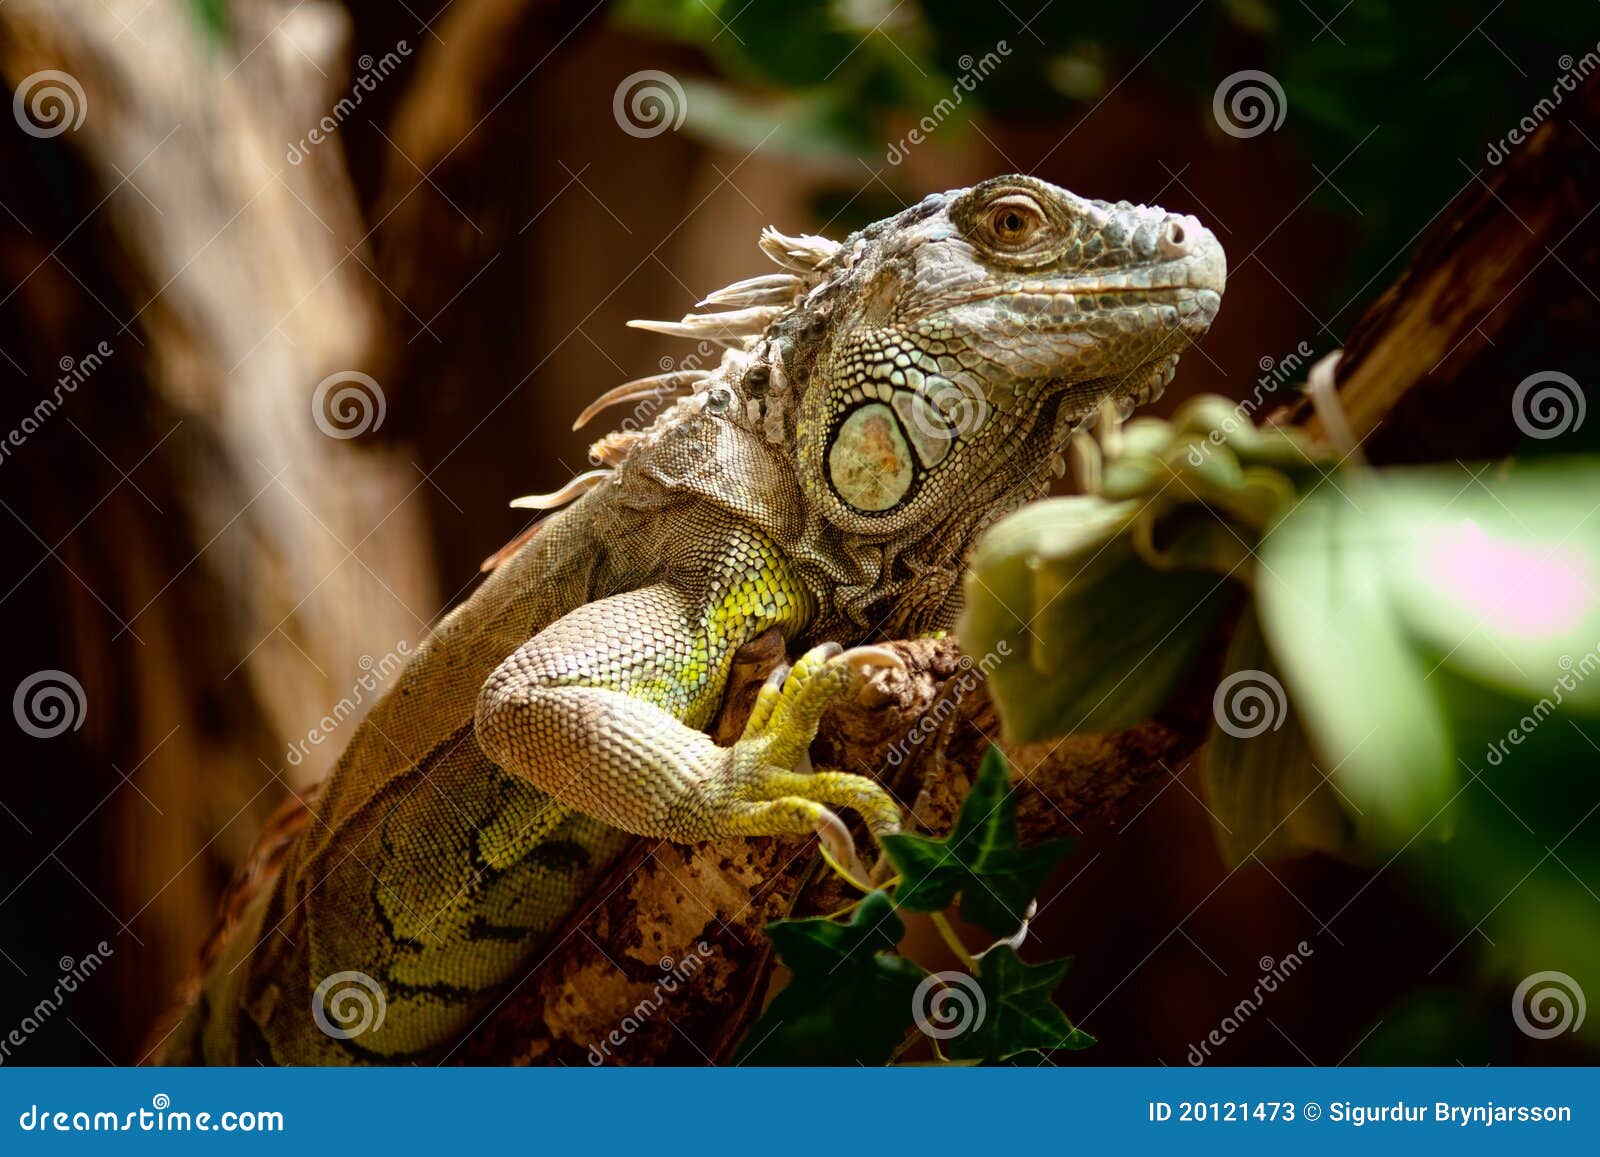 Iguana Pet